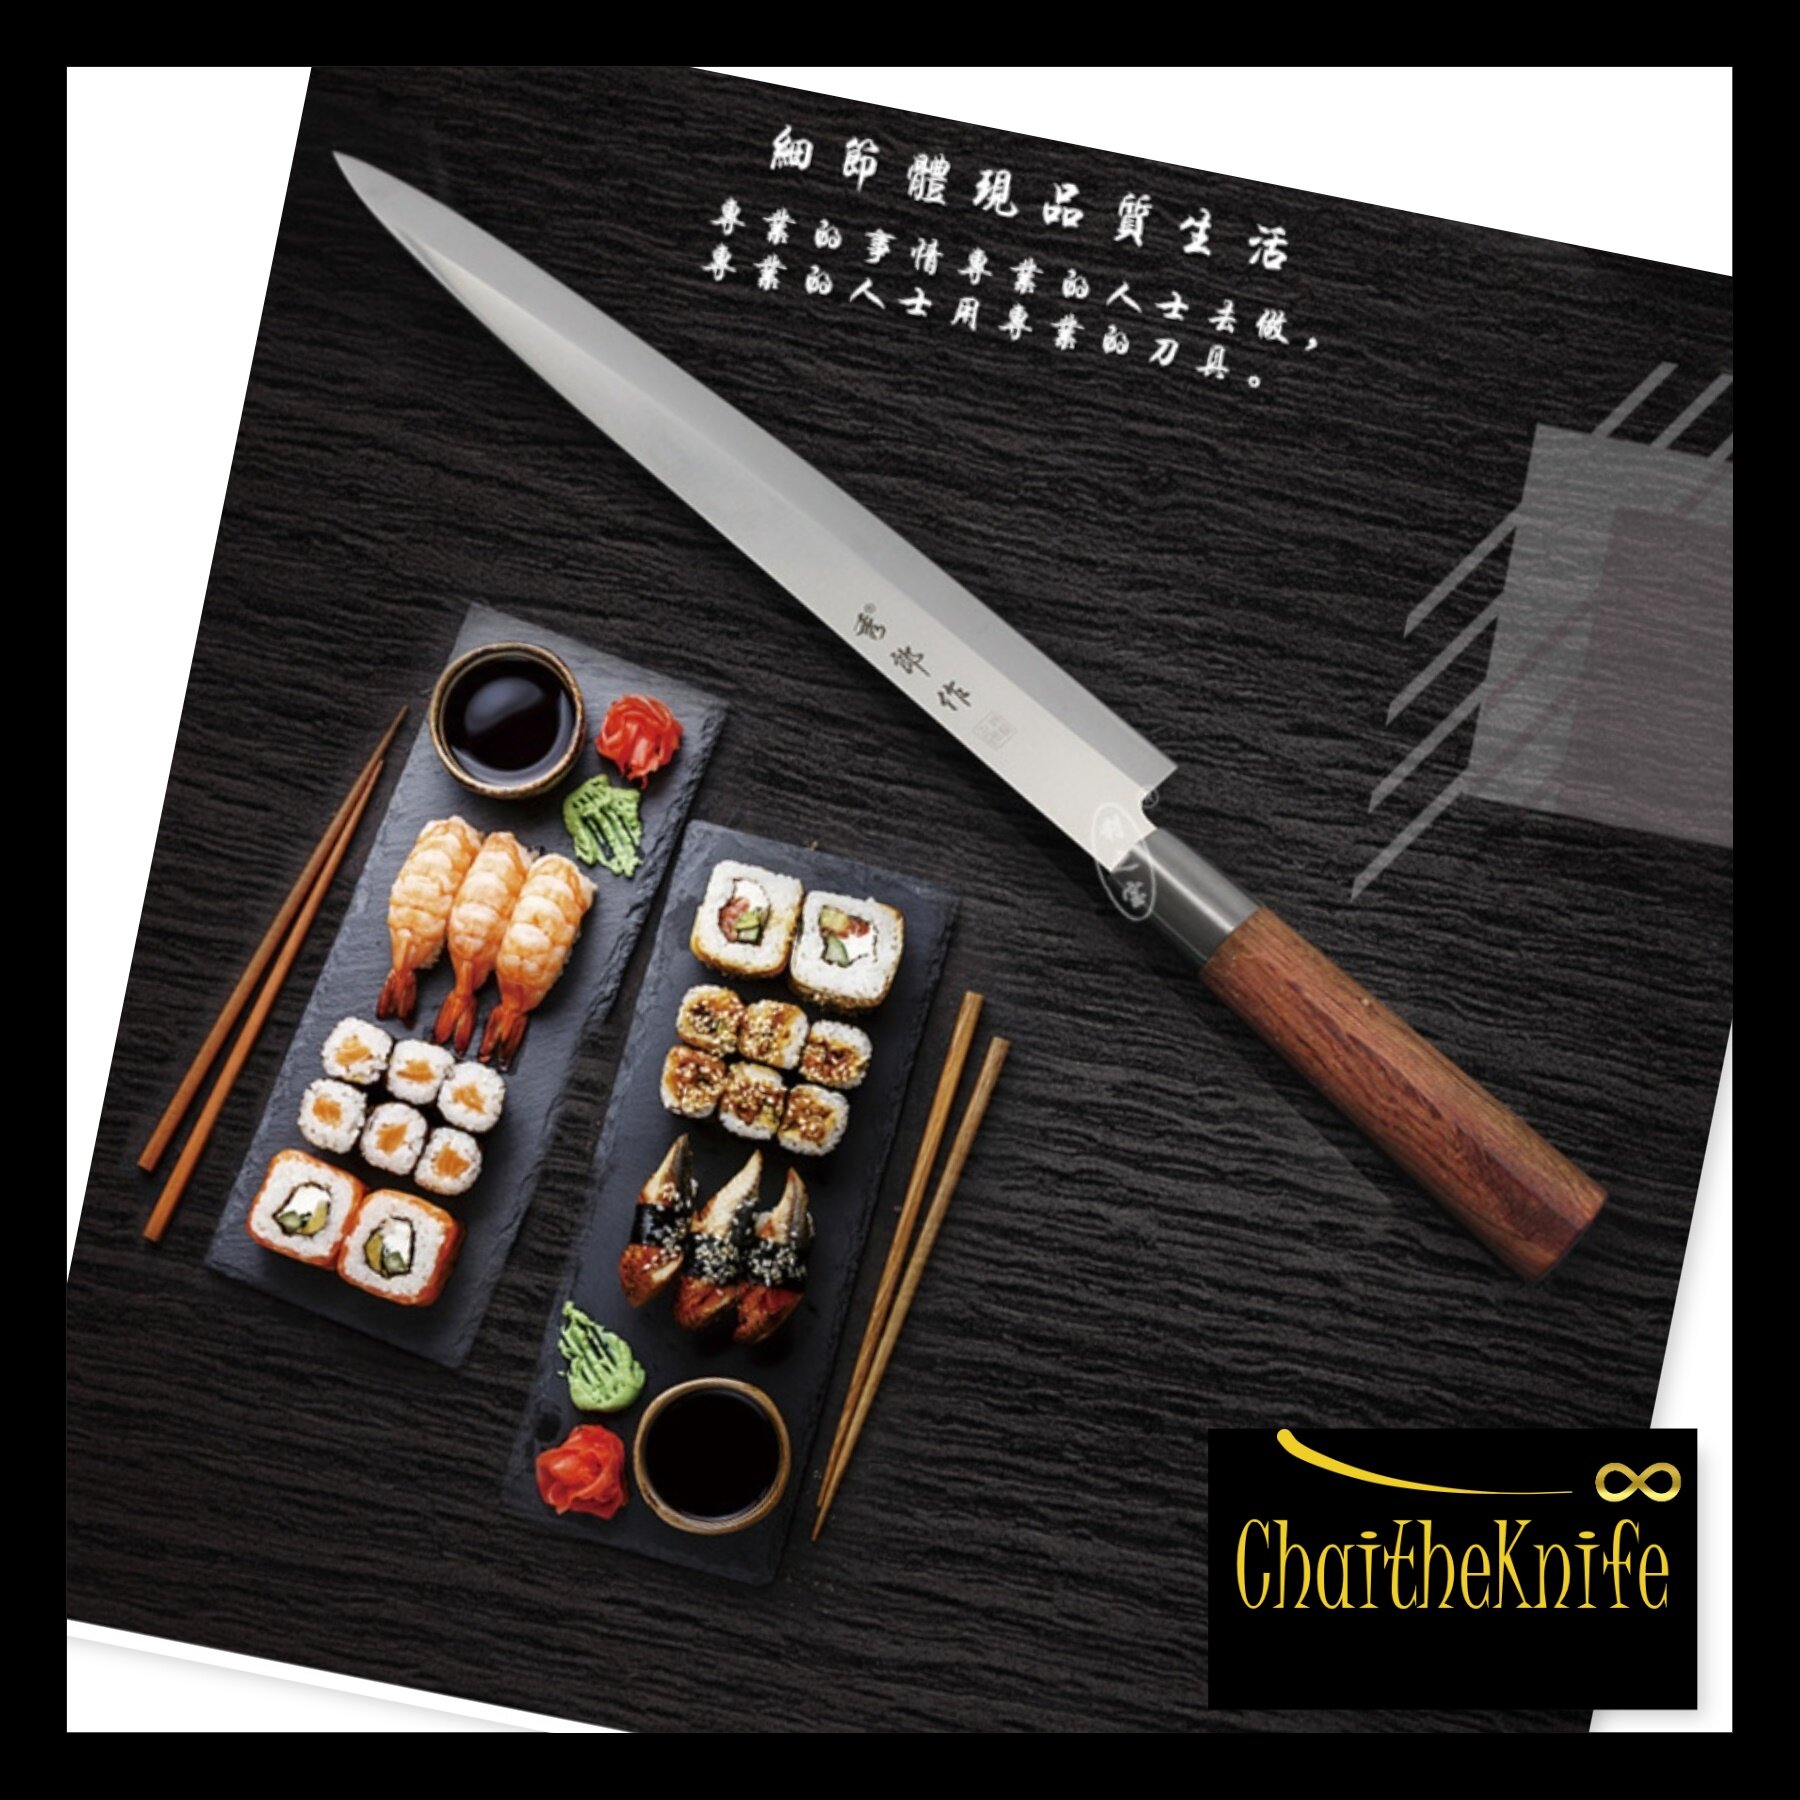 มีดเชฟ ญี่ปุ่นยานากิบะ Yanagiba fish knife ถนัดขวา ใบมีดยาว 30 เซ็นติเมตร ด้ามจับไม้ rose wood มาพร้อมกล่อง Japanese Yanagiba Fish Knife right hand user 30 cm rose wood handle